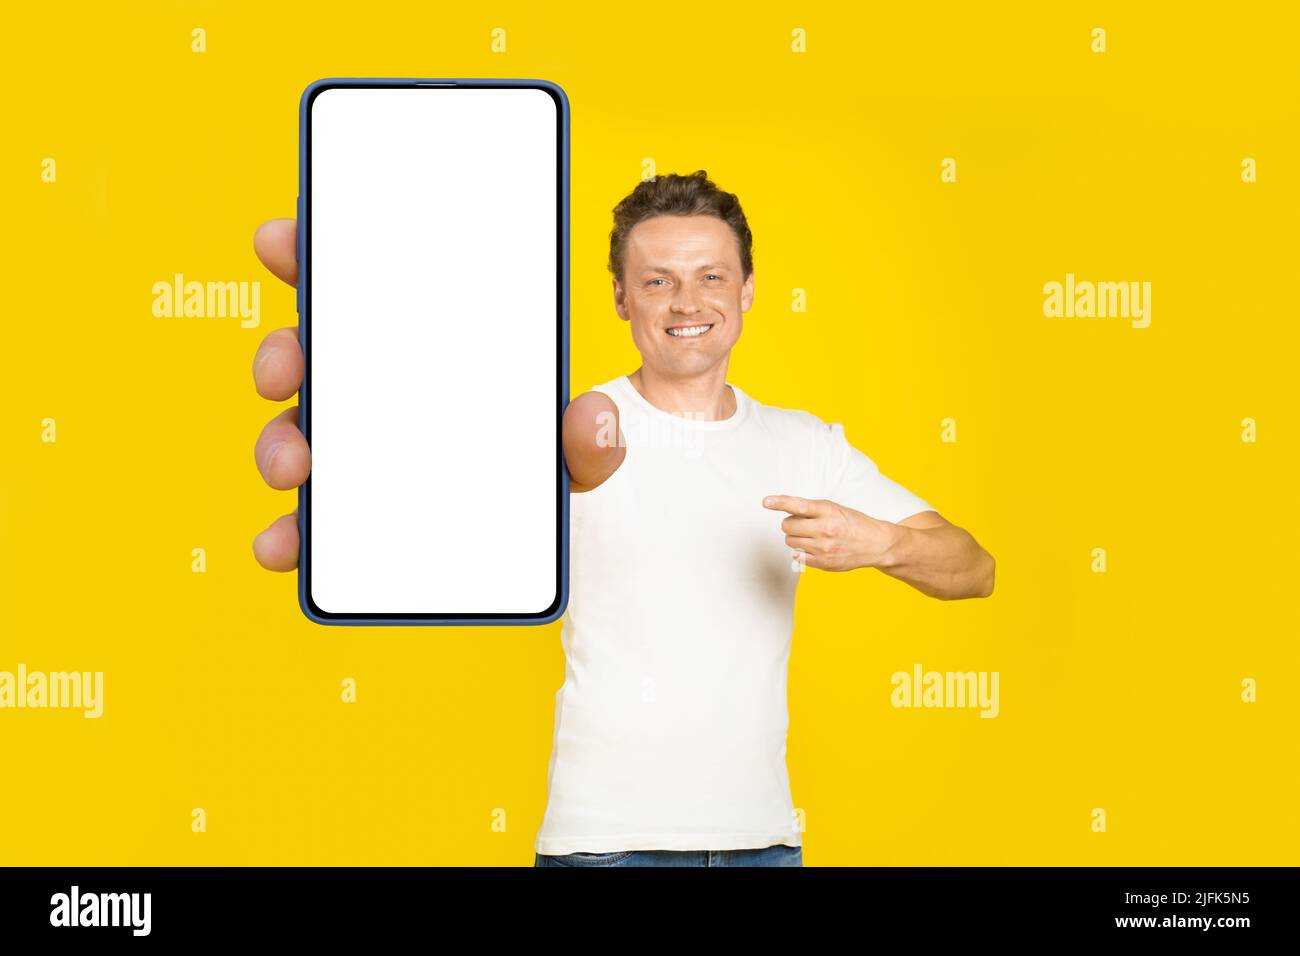 Beau homme blond pointant vers un smartphone géant avec écran blanc vide, portant un t-shirt blanc et un Jean écran de téléphone portable maquette isolée sur fond jaune. Publicité pour applications mobiles. Banque D'Images